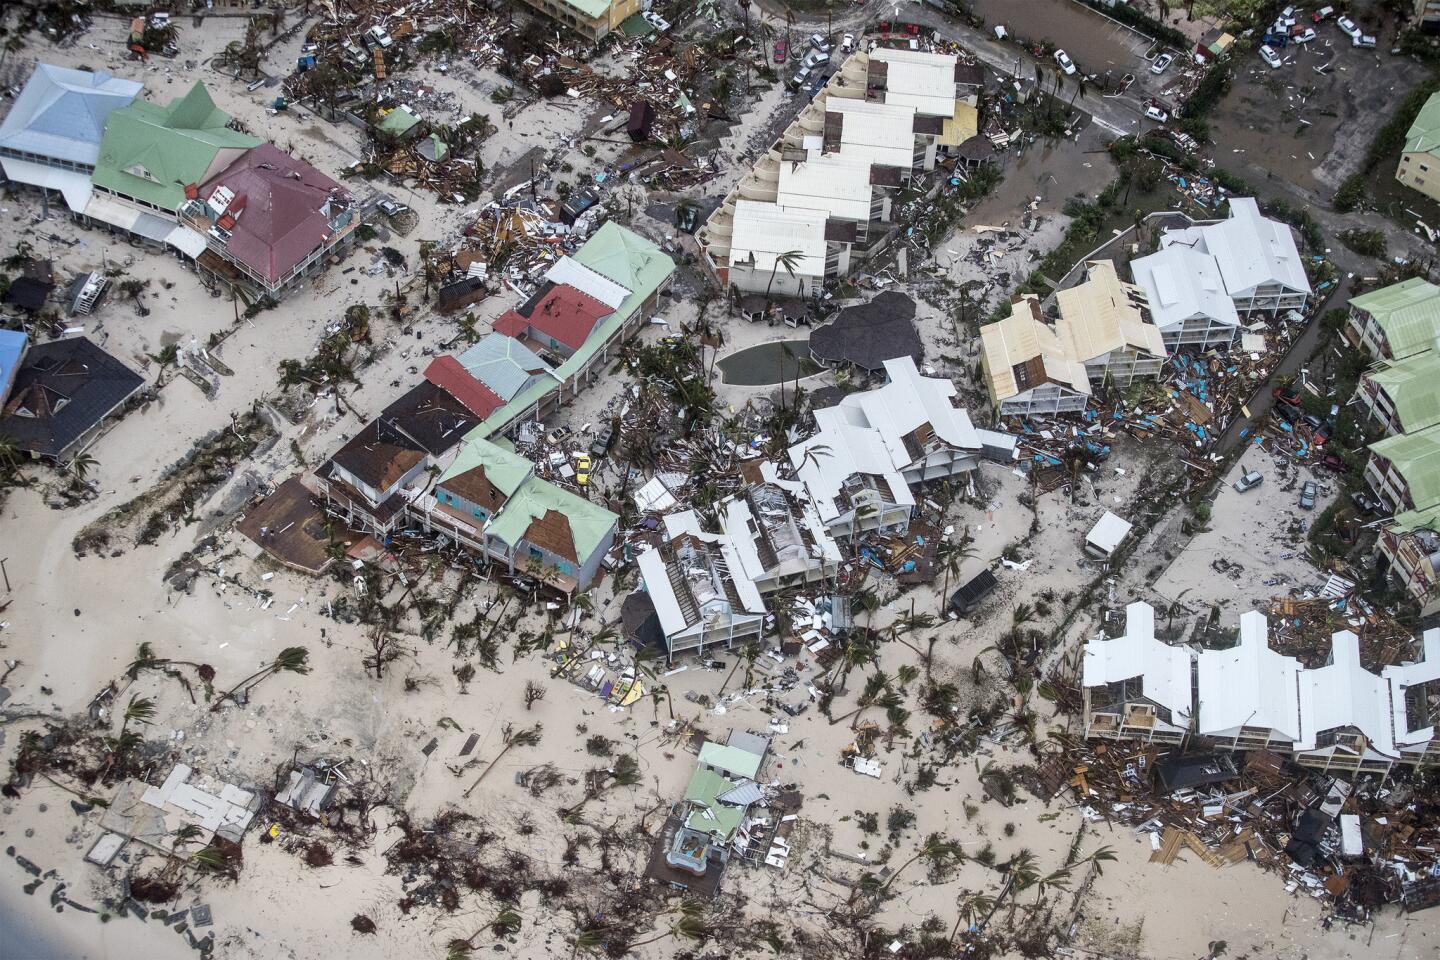 En esta imagen proporcionada por el Ministerio holandés de Defensa, una zona afectada por el huracán Irma en St. Martin. Irma dejó un rastro de devastacieon por el norte del Caribe, dejando a miles de personas sin hogar tras destruir edificios y arrancar árboles.